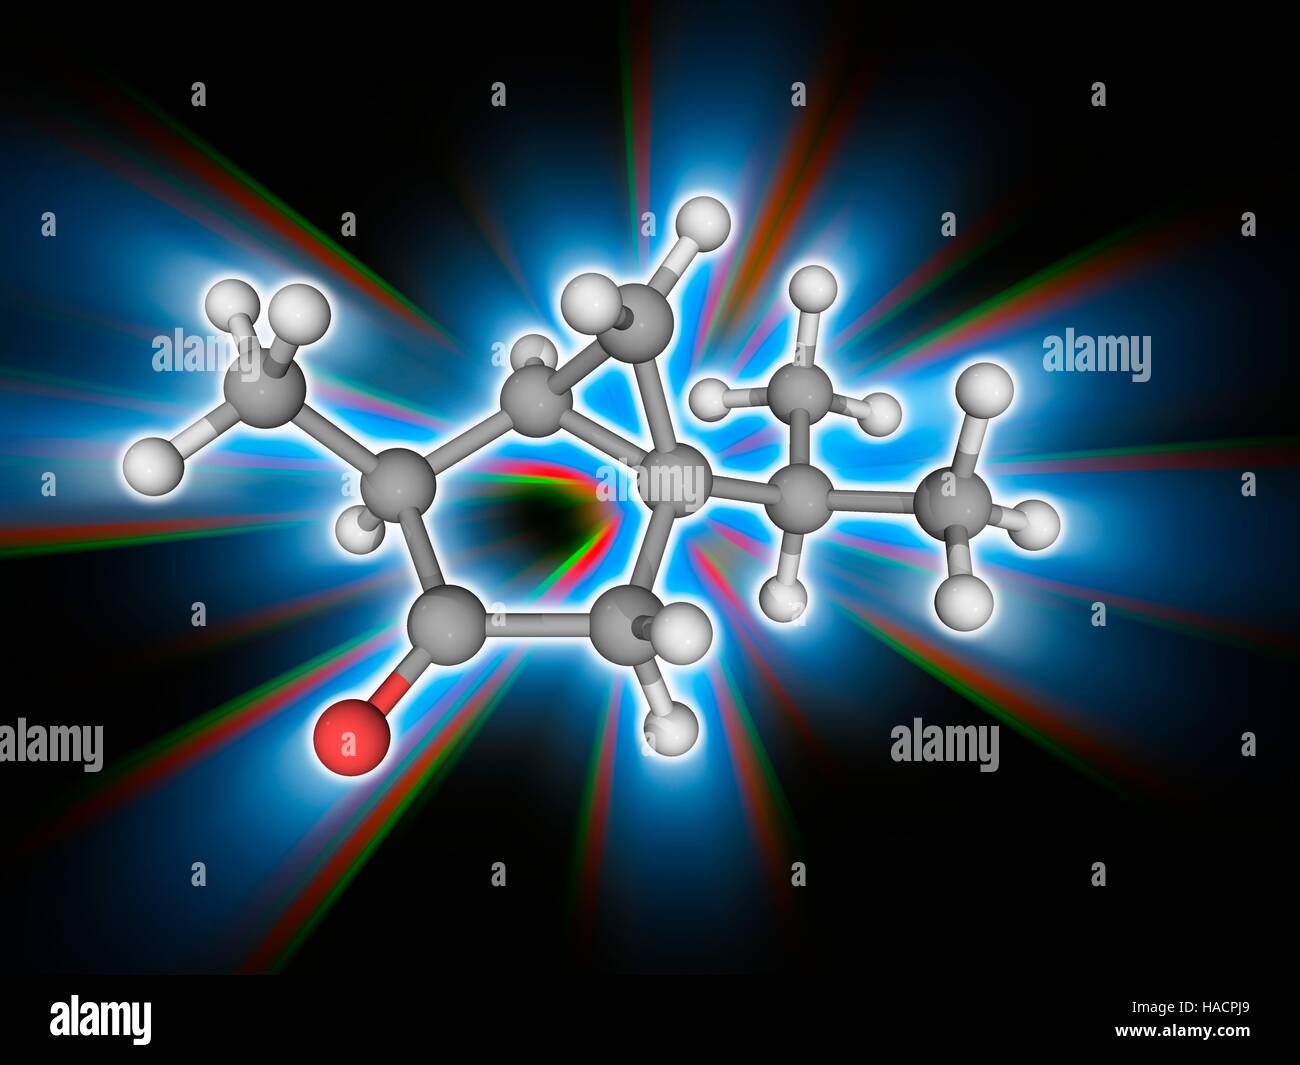 Thujon. Molekulares Modell des organischen Verbindung Thujon (C10. H16. (O). es ist chemisch ein Keton und einem Monoterpen. Es hat einen Menthol Geruch und findet sich in den Geist Absinth. Wenn getrunken, wirkt Thujon als ein GABA-A (Gamma - Aminobuttersäure)-Rezeptor-Antagonisten. Atome als Kugeln dargestellt werden und sind farblich gekennzeichnet: Kohlenstoff (grau), Wasserstoff (weiß) und Sauerstoff (rot). Abbildung. Stockfoto